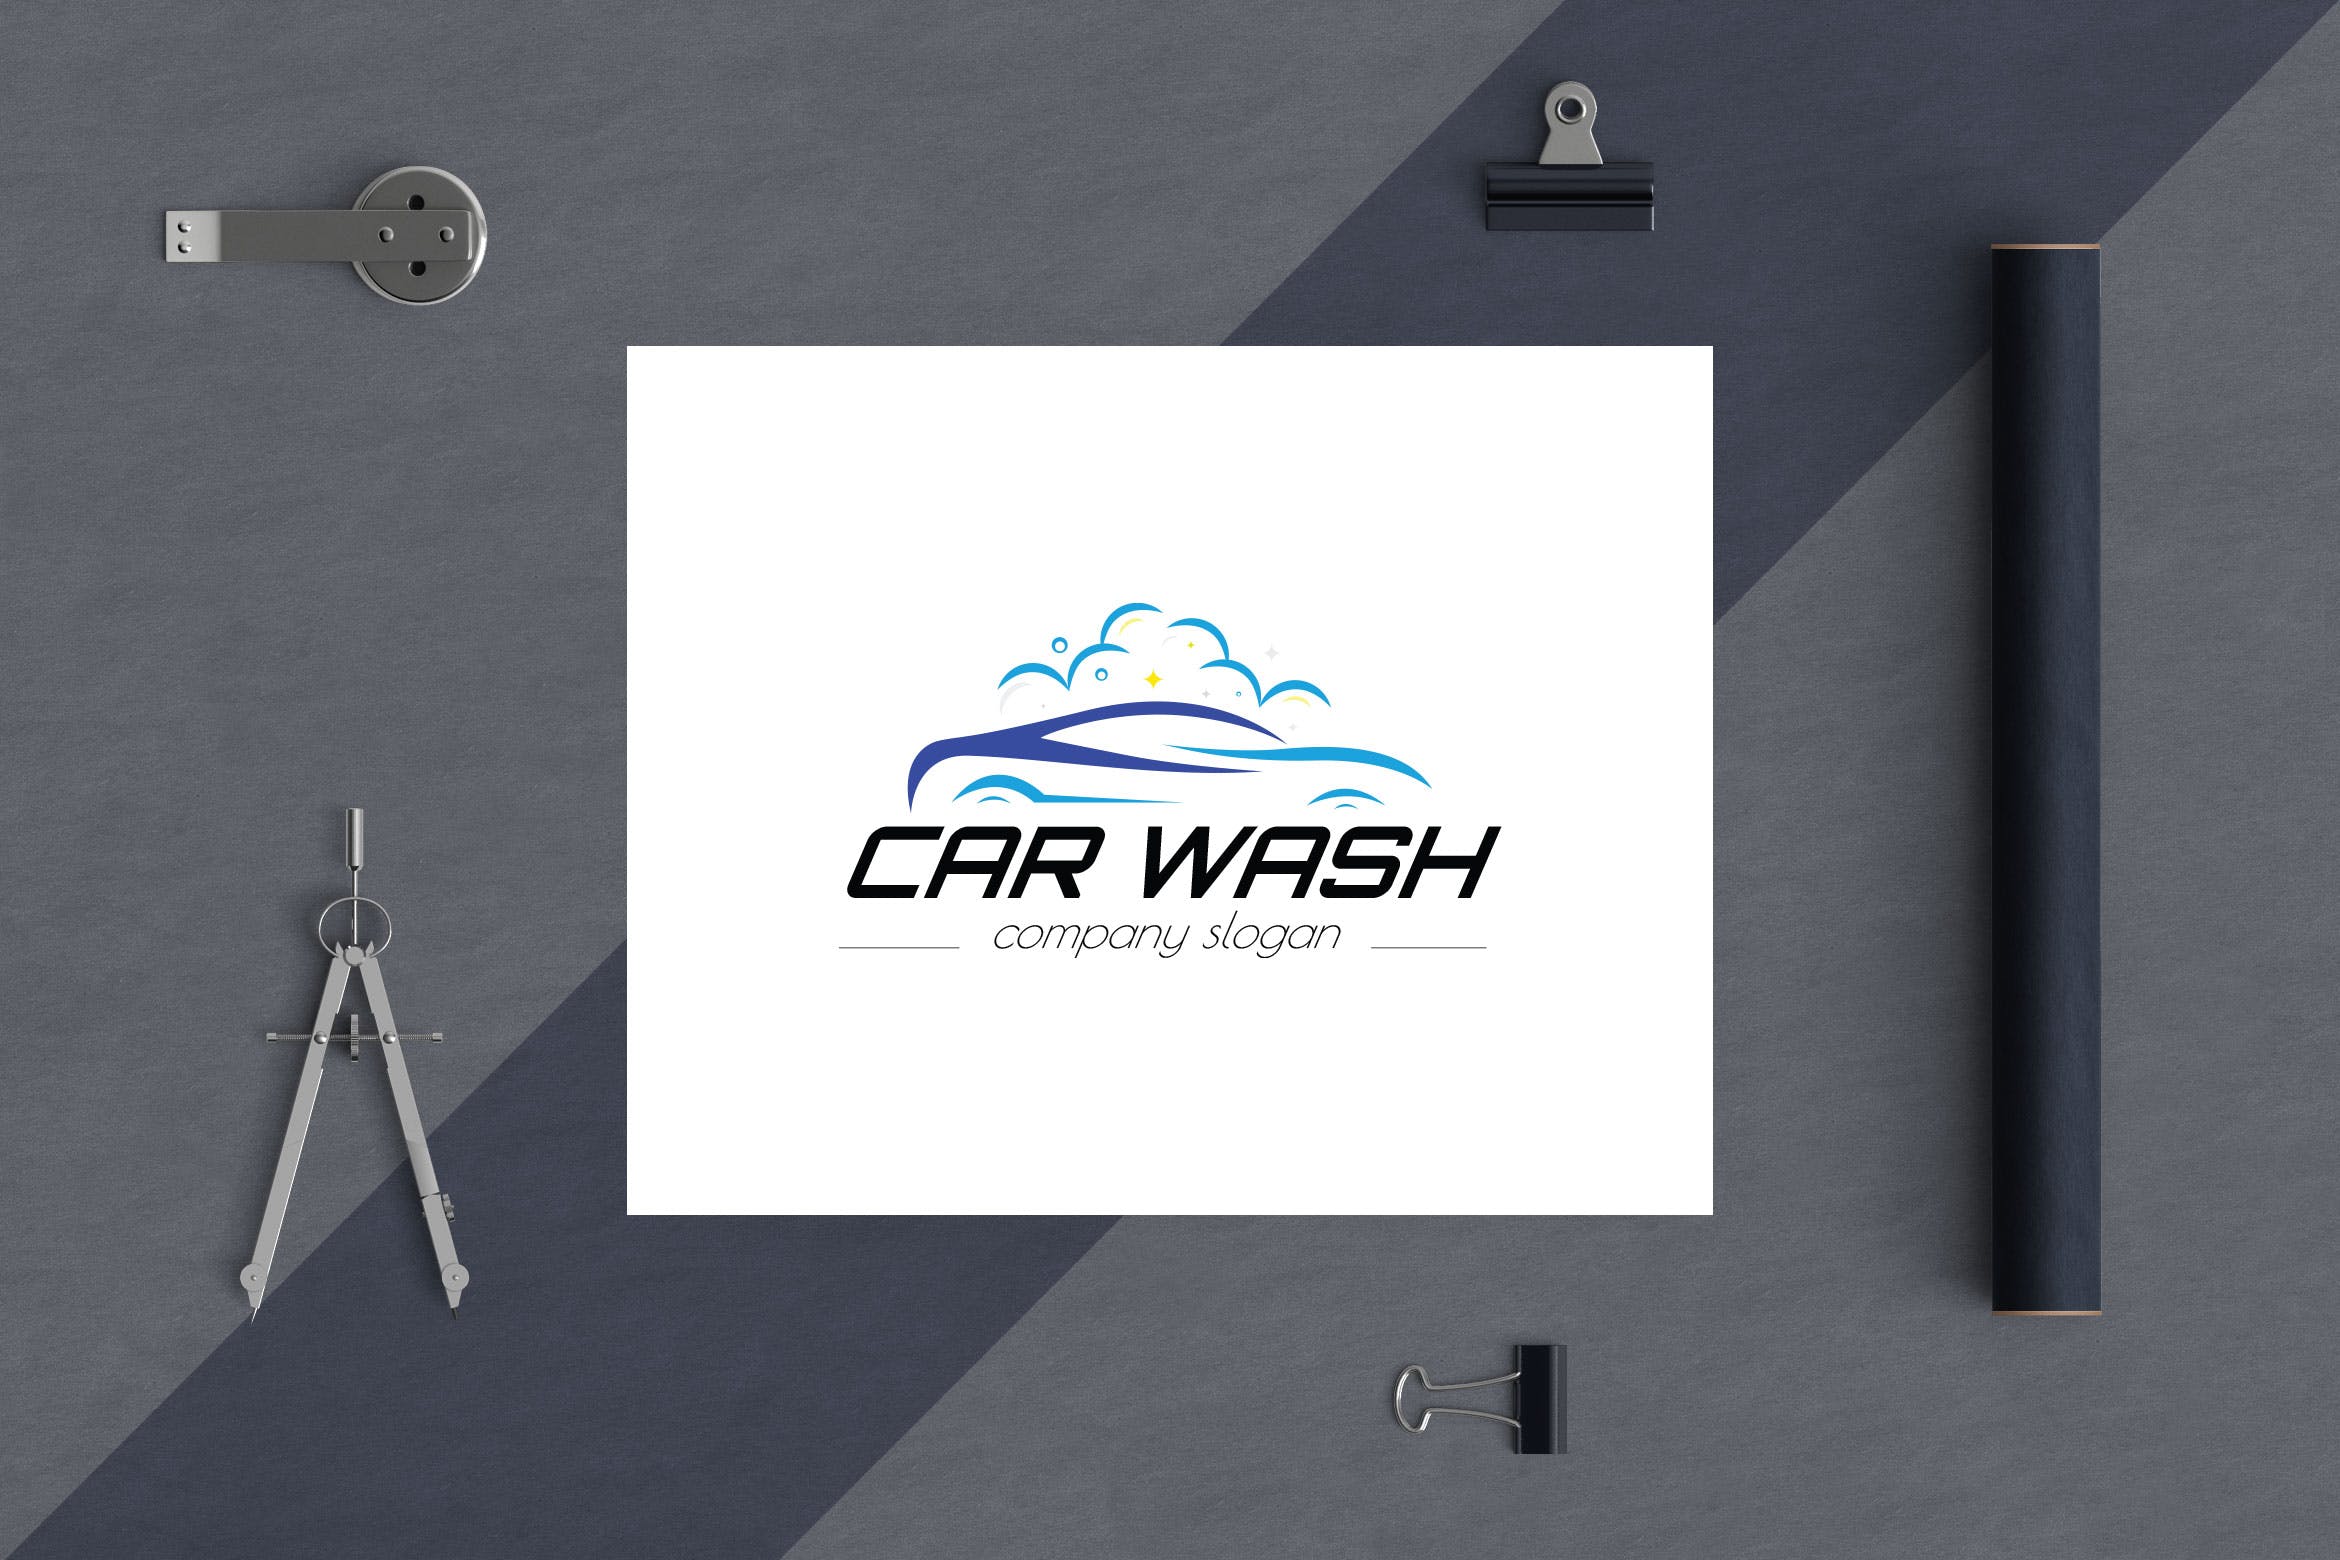 洗车店品牌Logo设计第一素材精选模板 Car Wash Business Logo Template插图